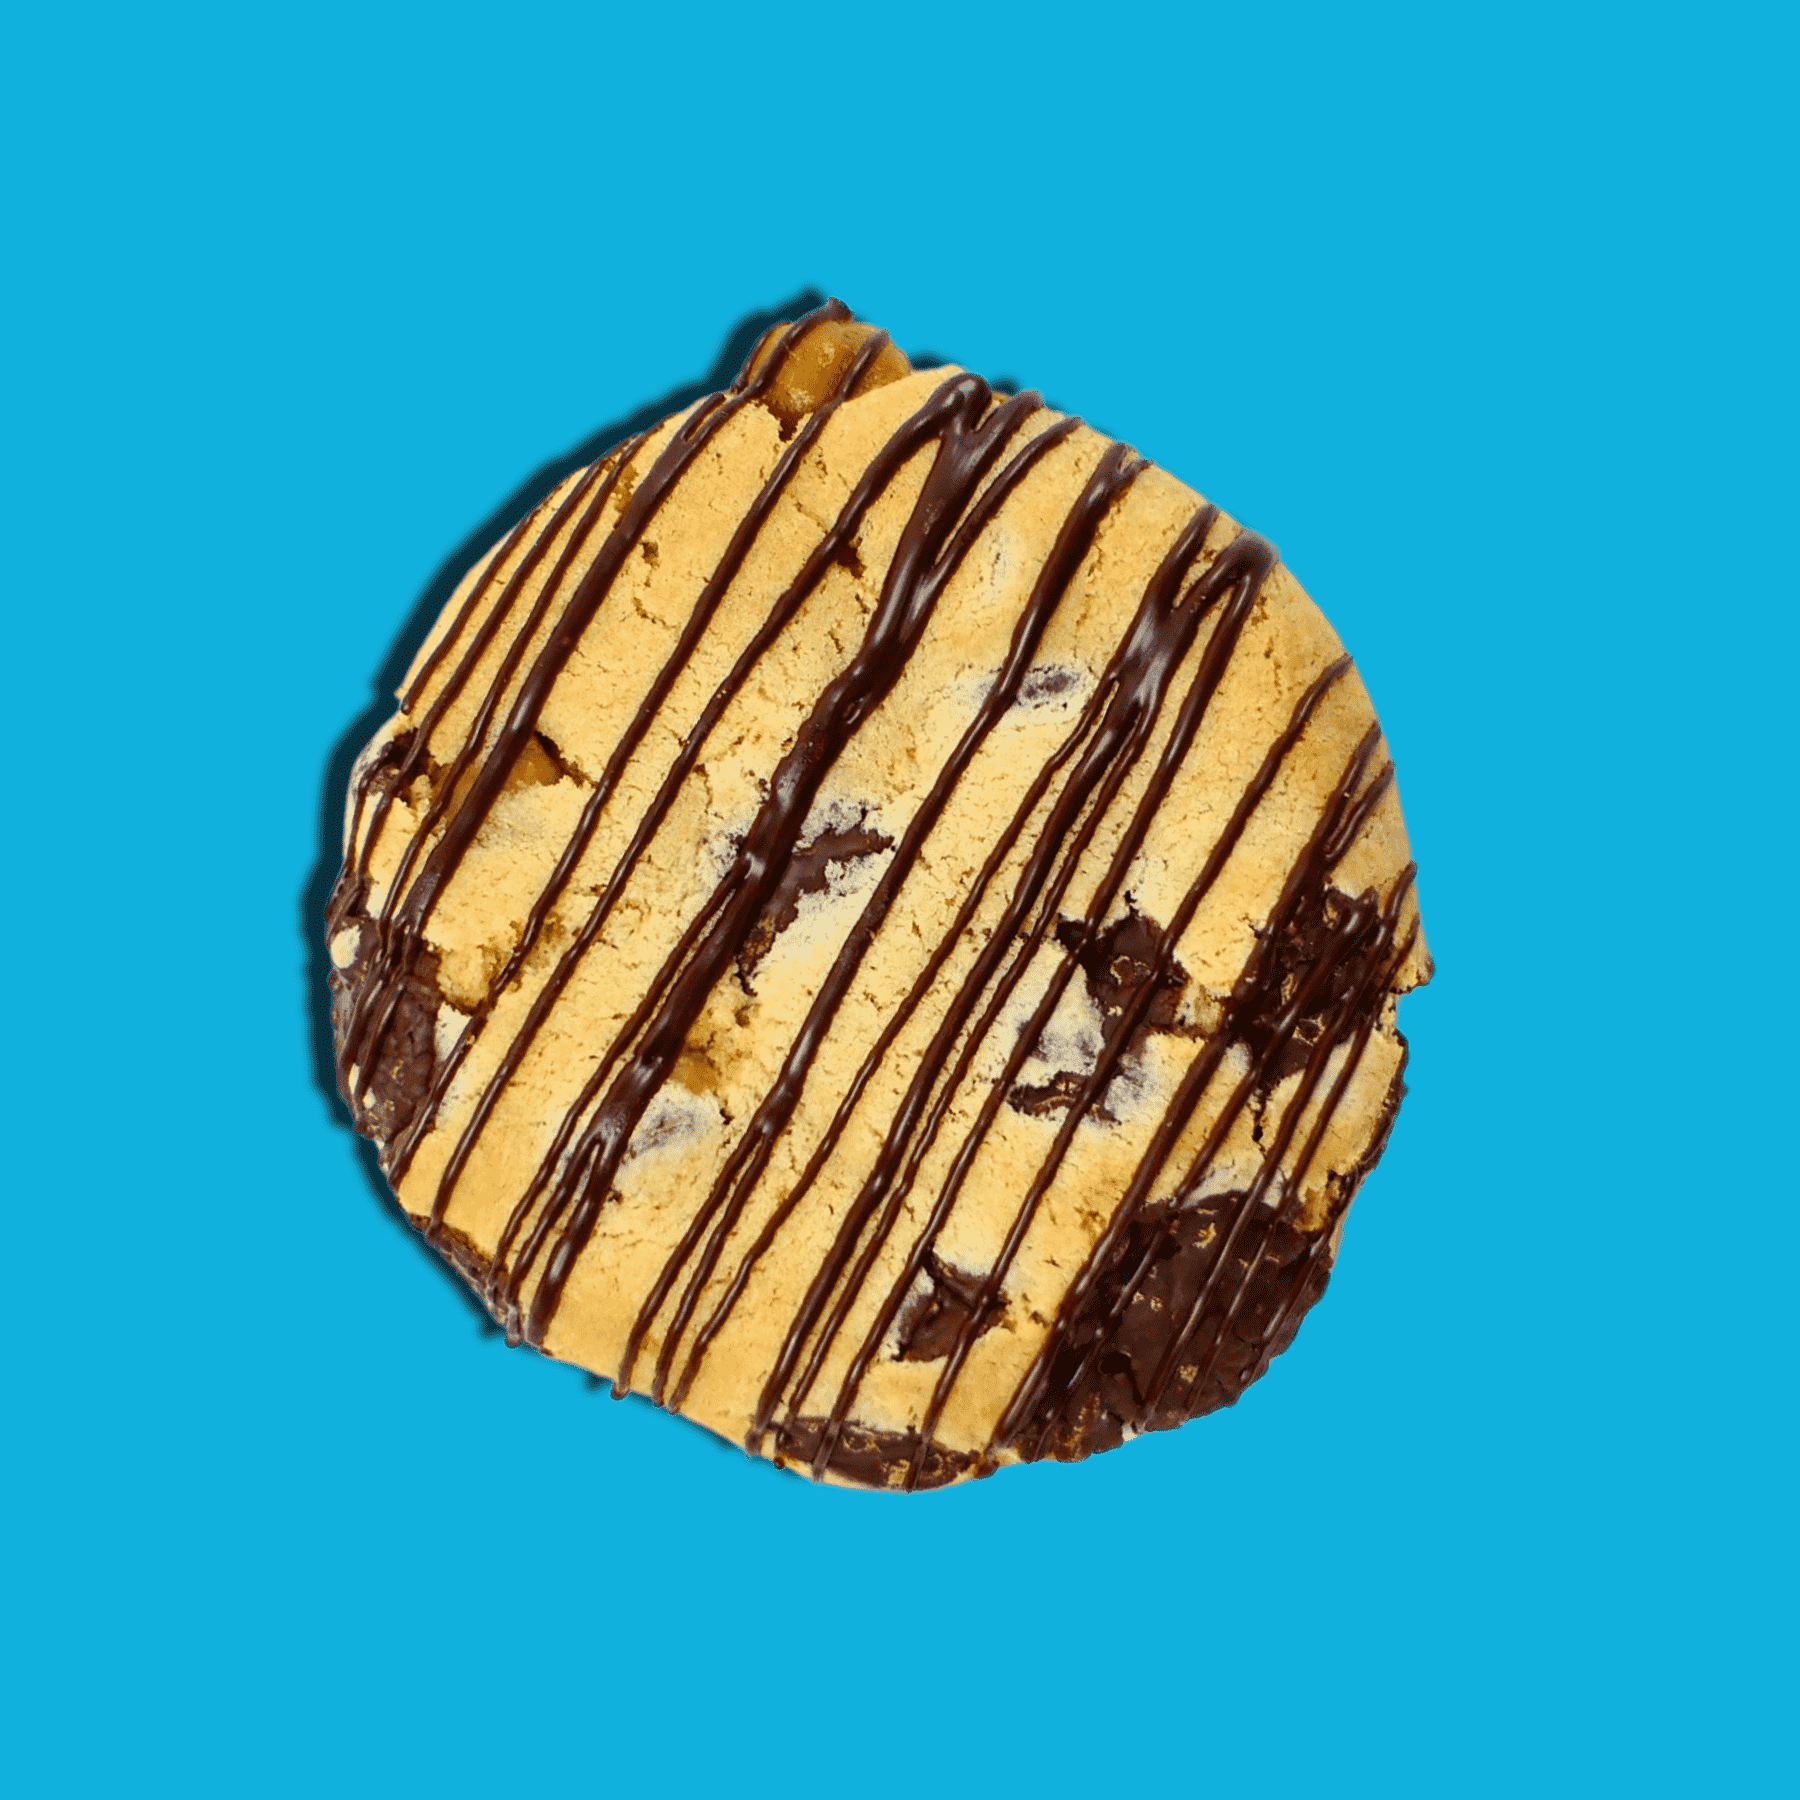 Choco-Caramel Cookies - 4 Cookies